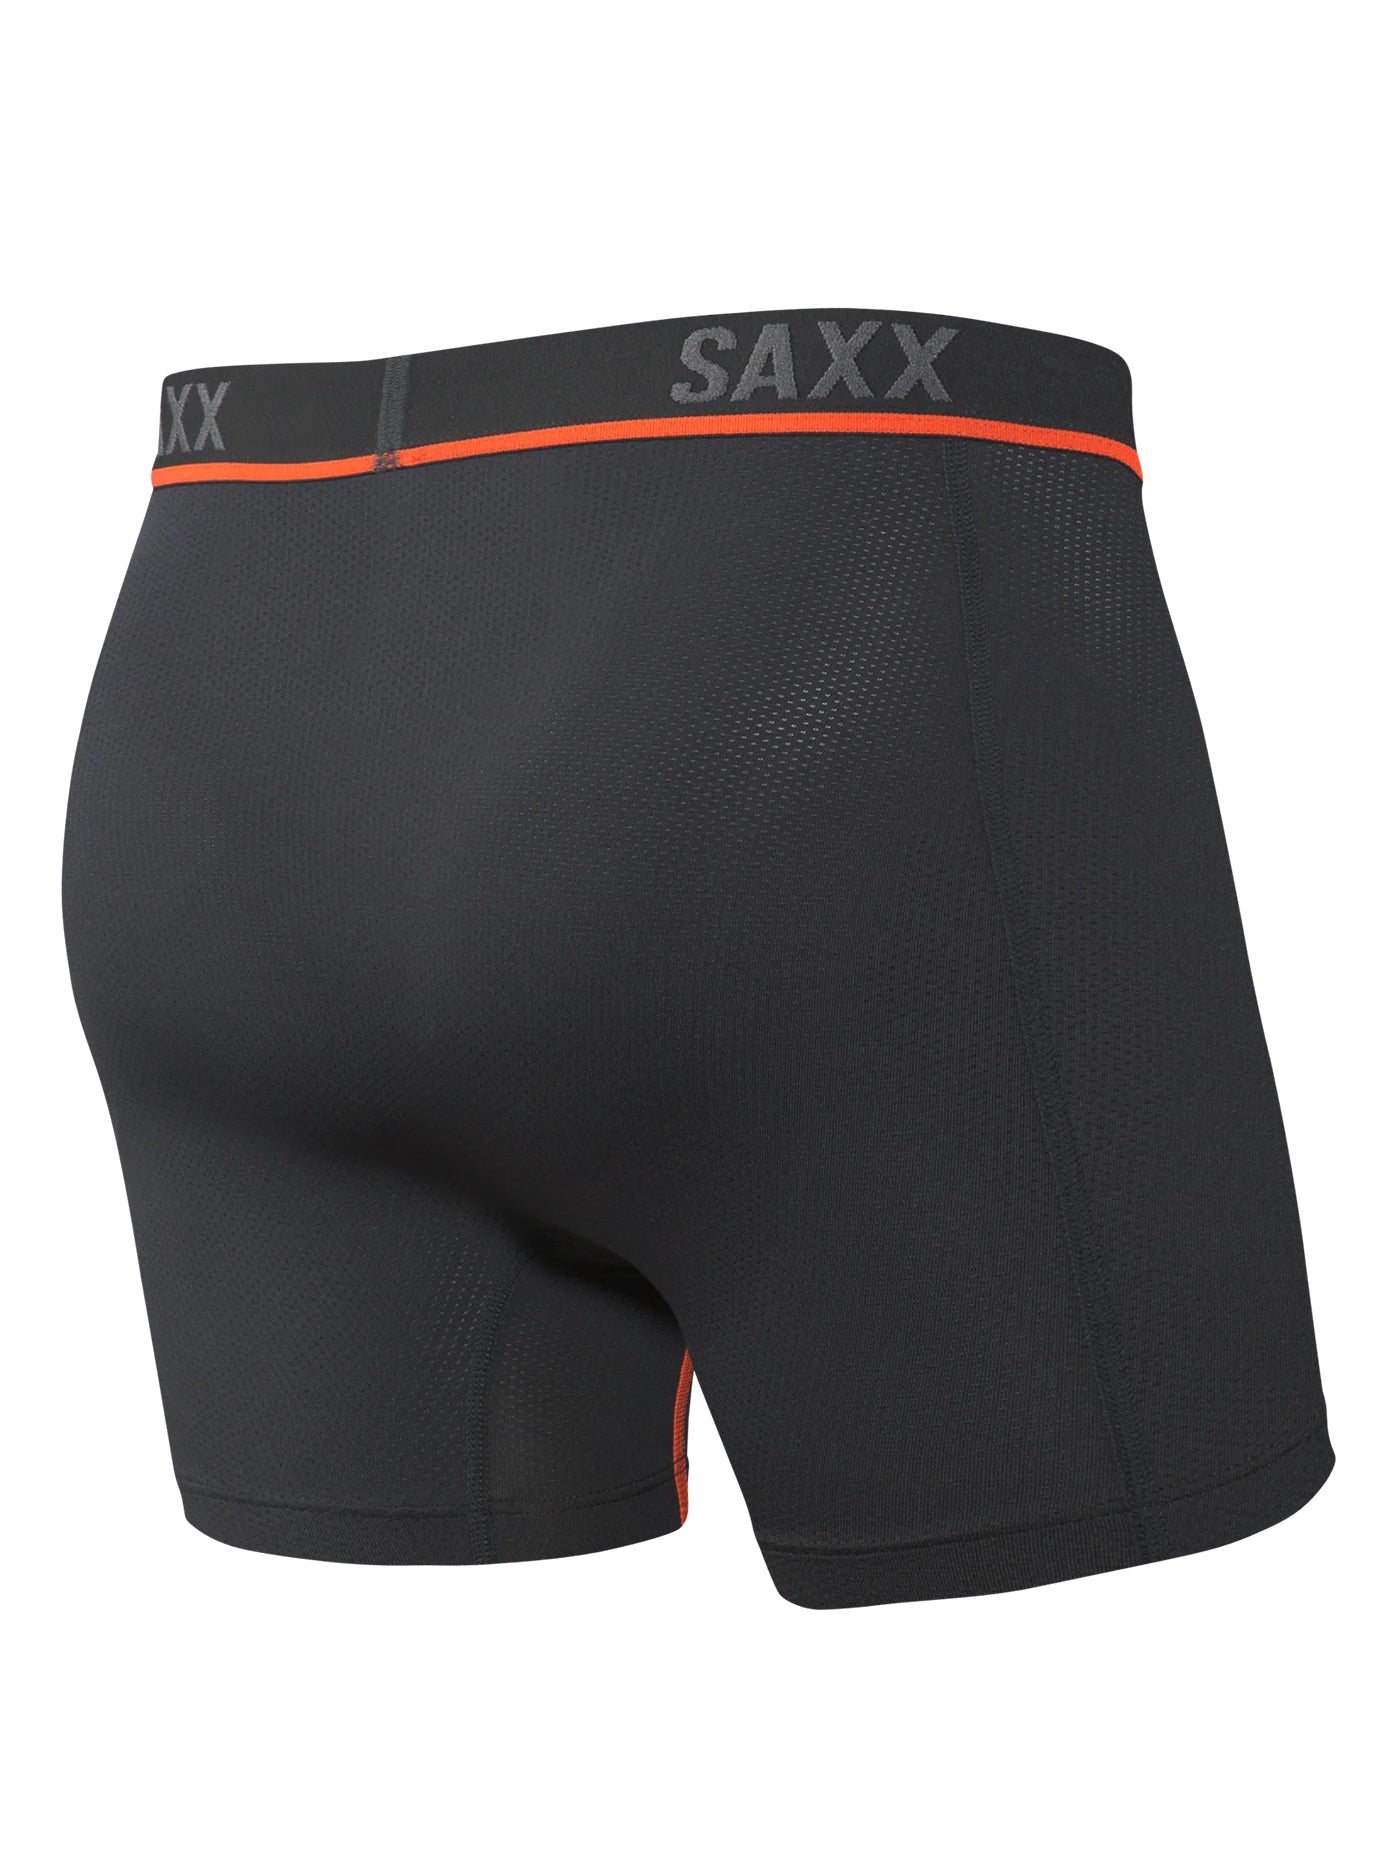 SAXX Kinetic Light Compression Mesh Boxer Brief SXBB32